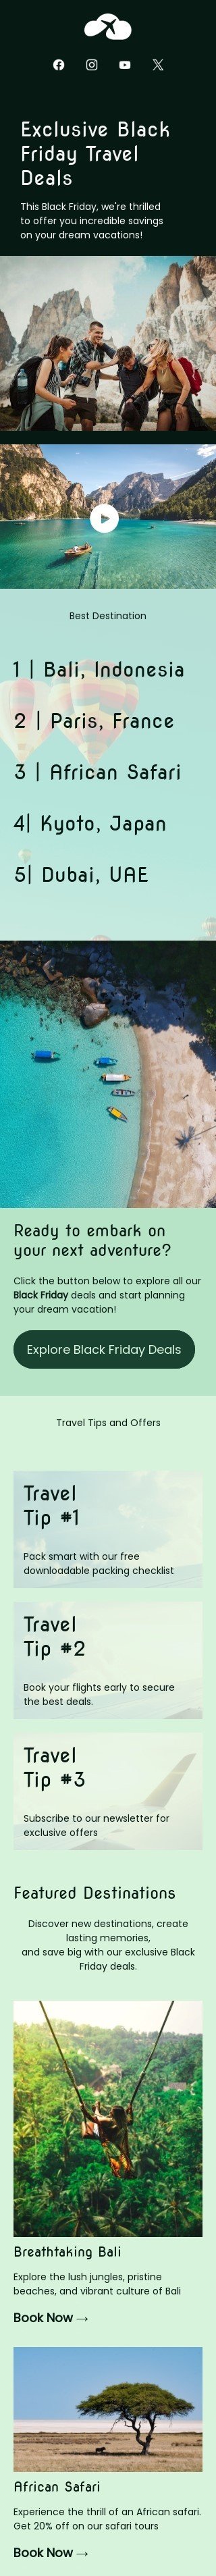 Plantilla de correo electrónico «Ofertas de viaje del Black Friday» de Black Friday para la industria de turismo Vista de móvil